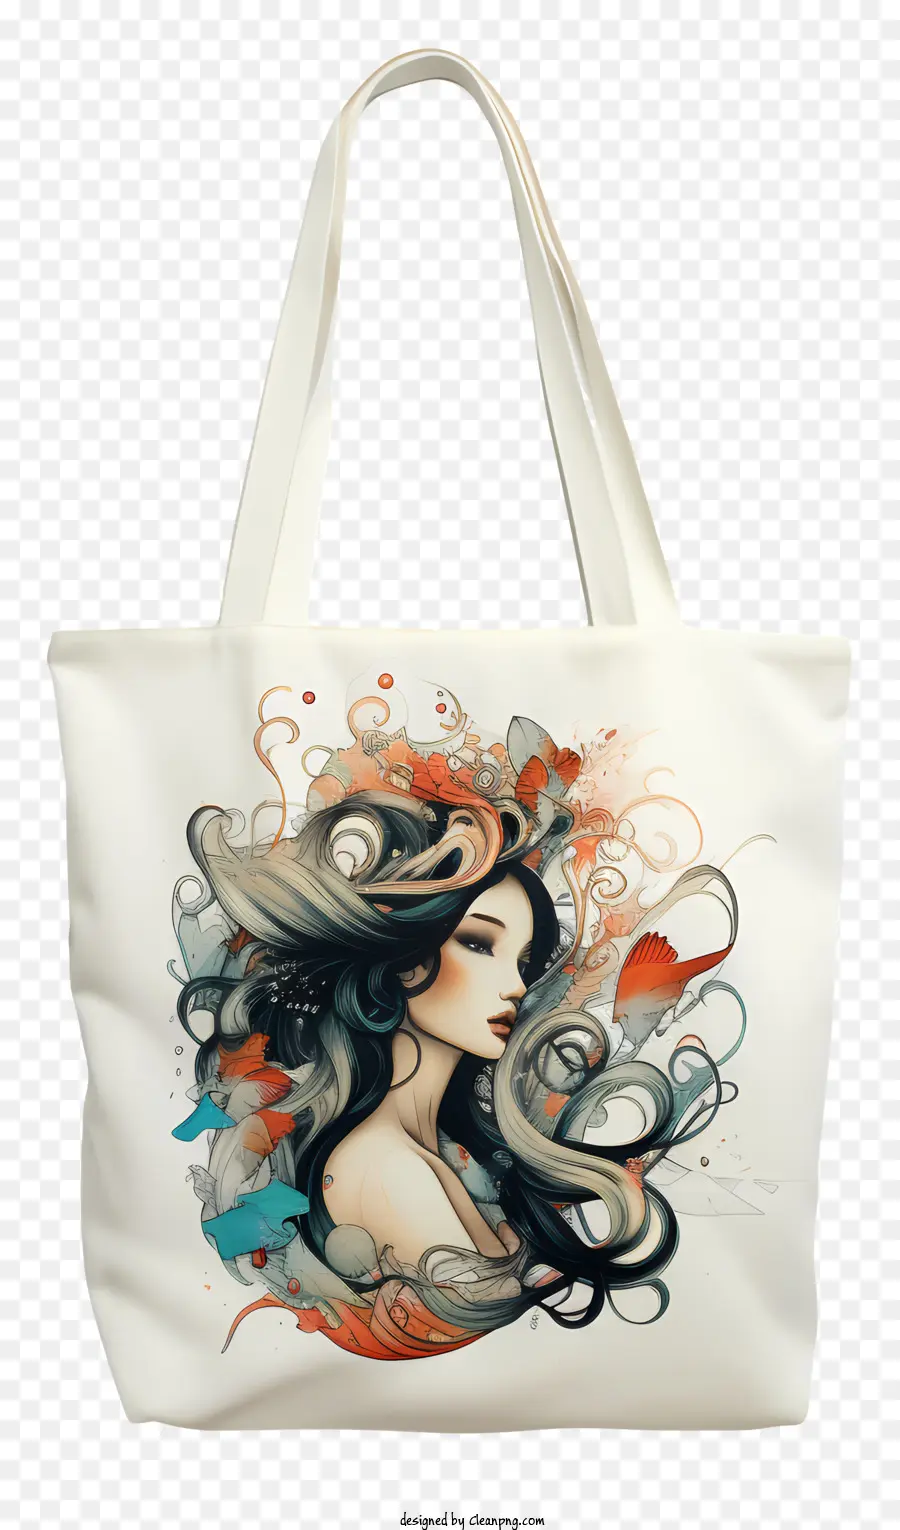 hoa thiết kế - Người phụ nữ xinh đẹp với mái tóc xoăn cầm hoa tute